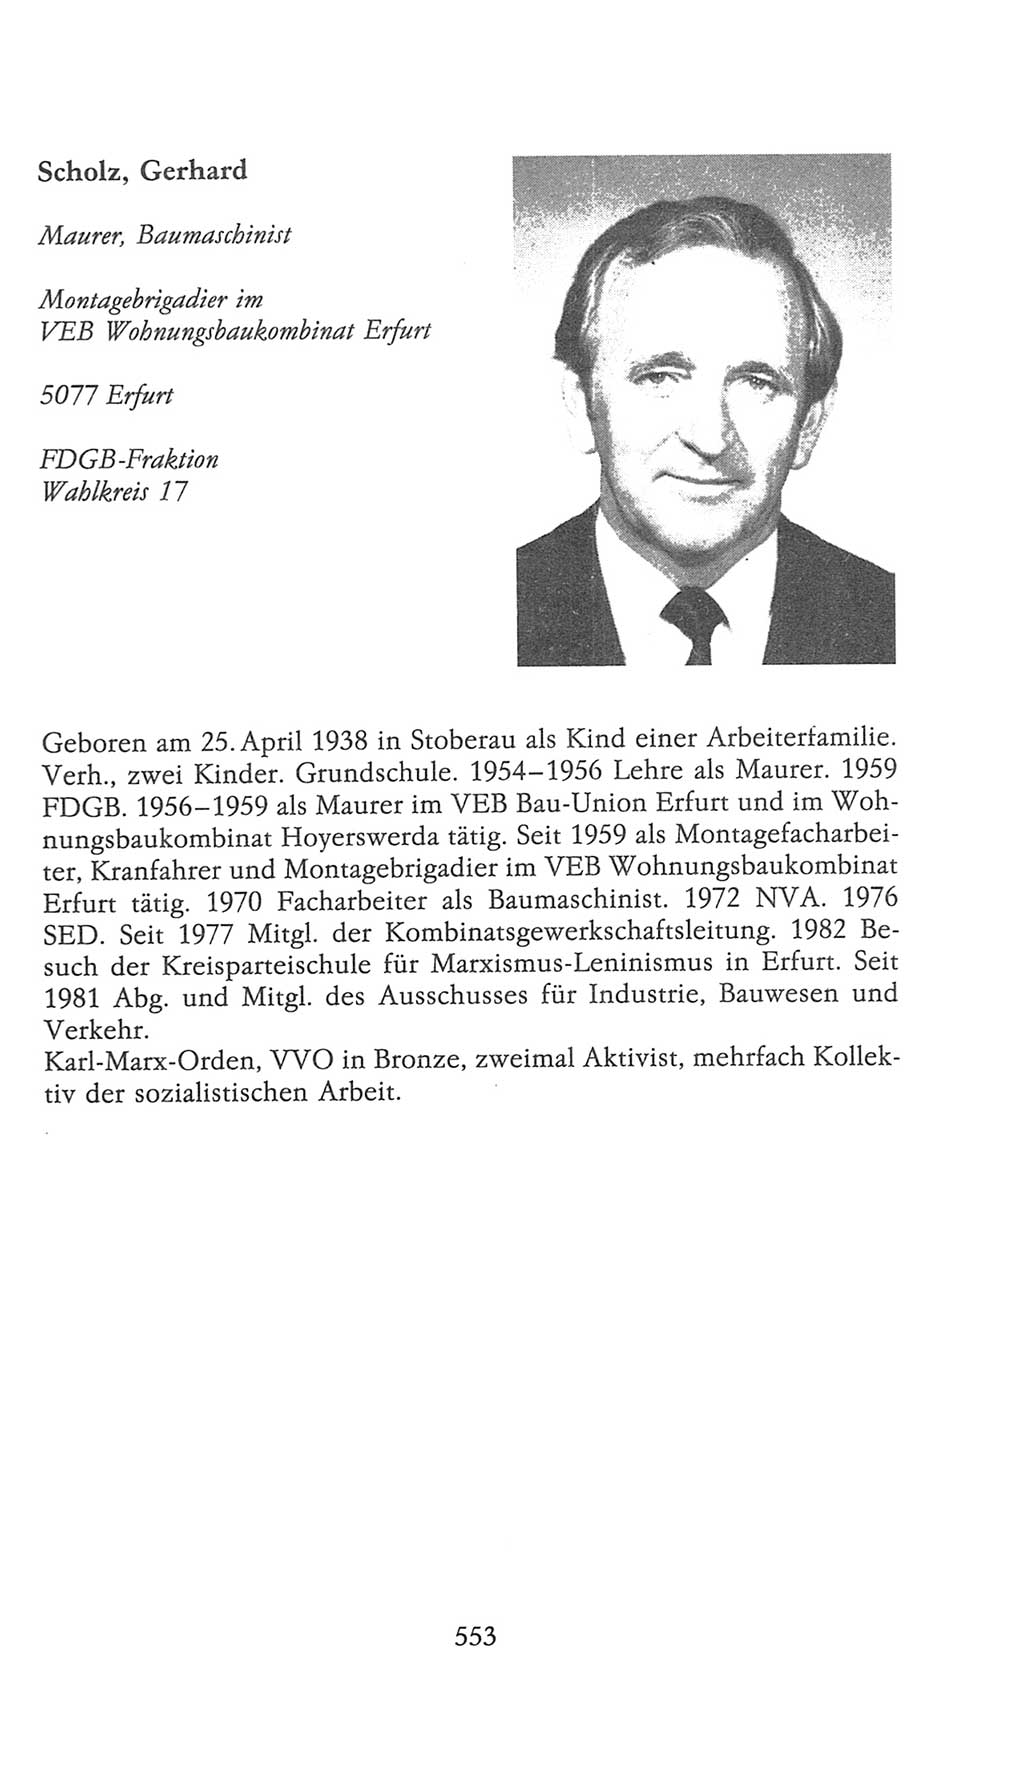 Volkskammer (VK) der Deutschen Demokratischen Republik (DDR), 9. Wahlperiode 1986-1990, Seite 553 (VK. DDR 9. WP. 1986-1990, S. 553)